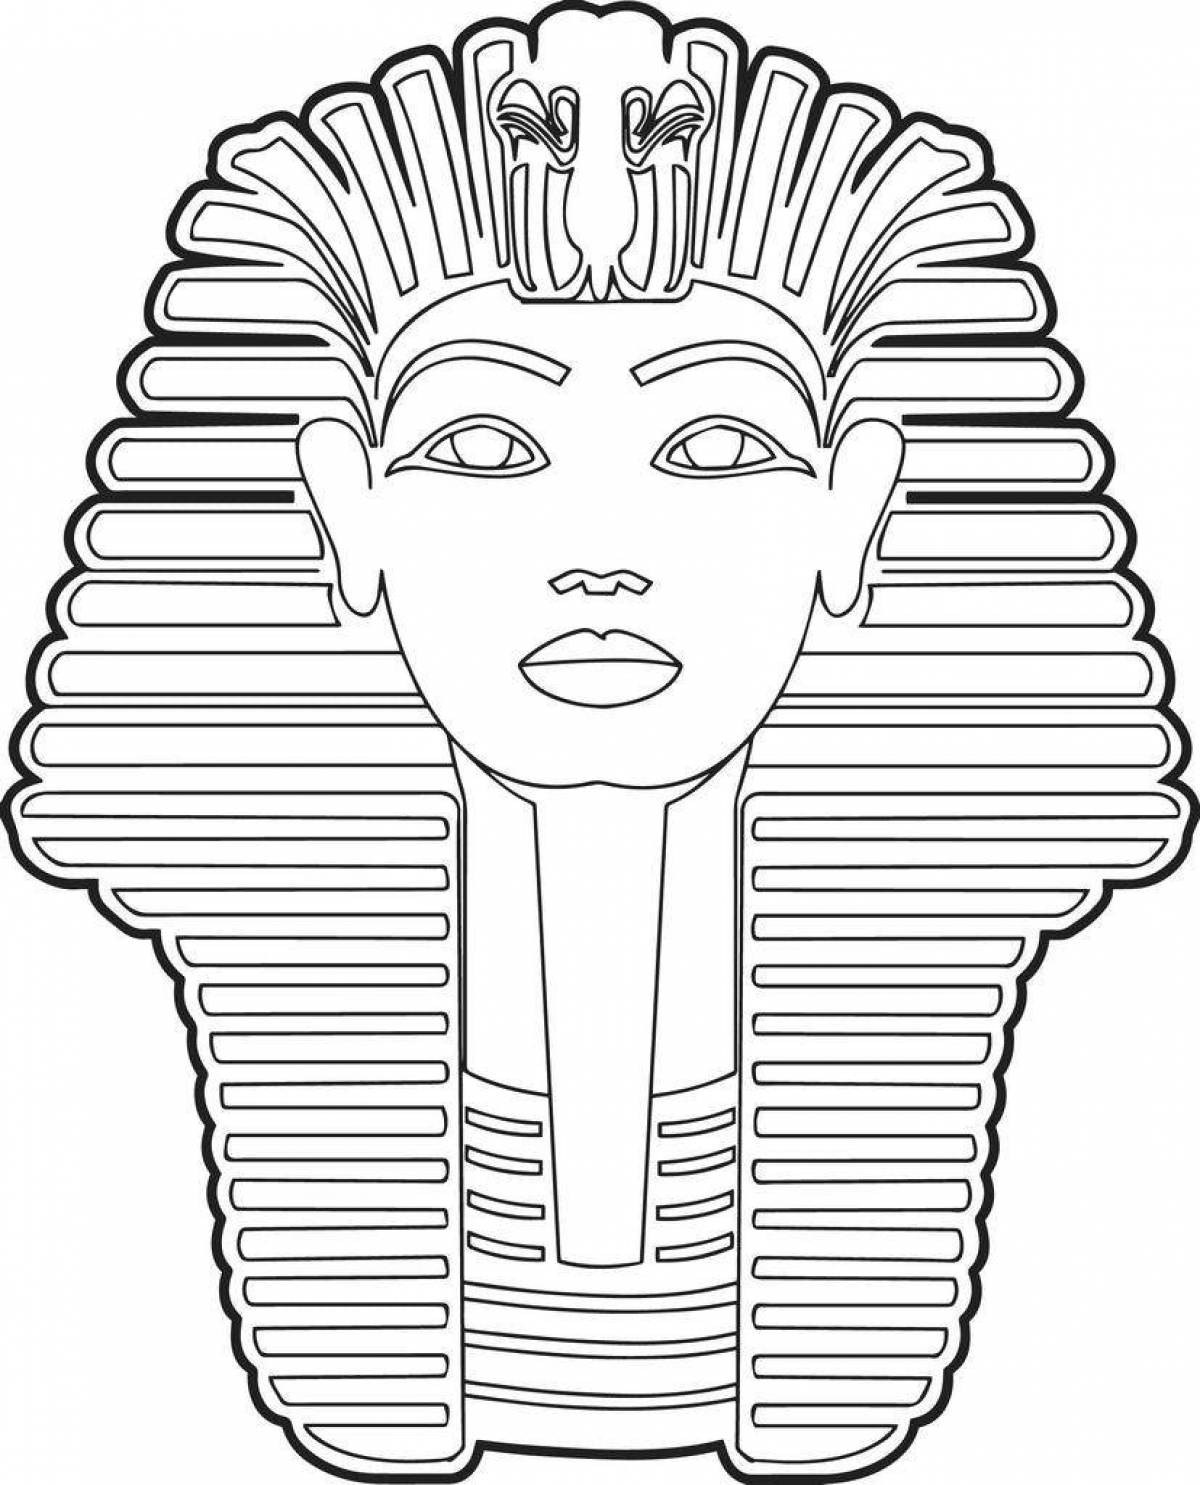 Раскраски Египет фараон Тутанхамон